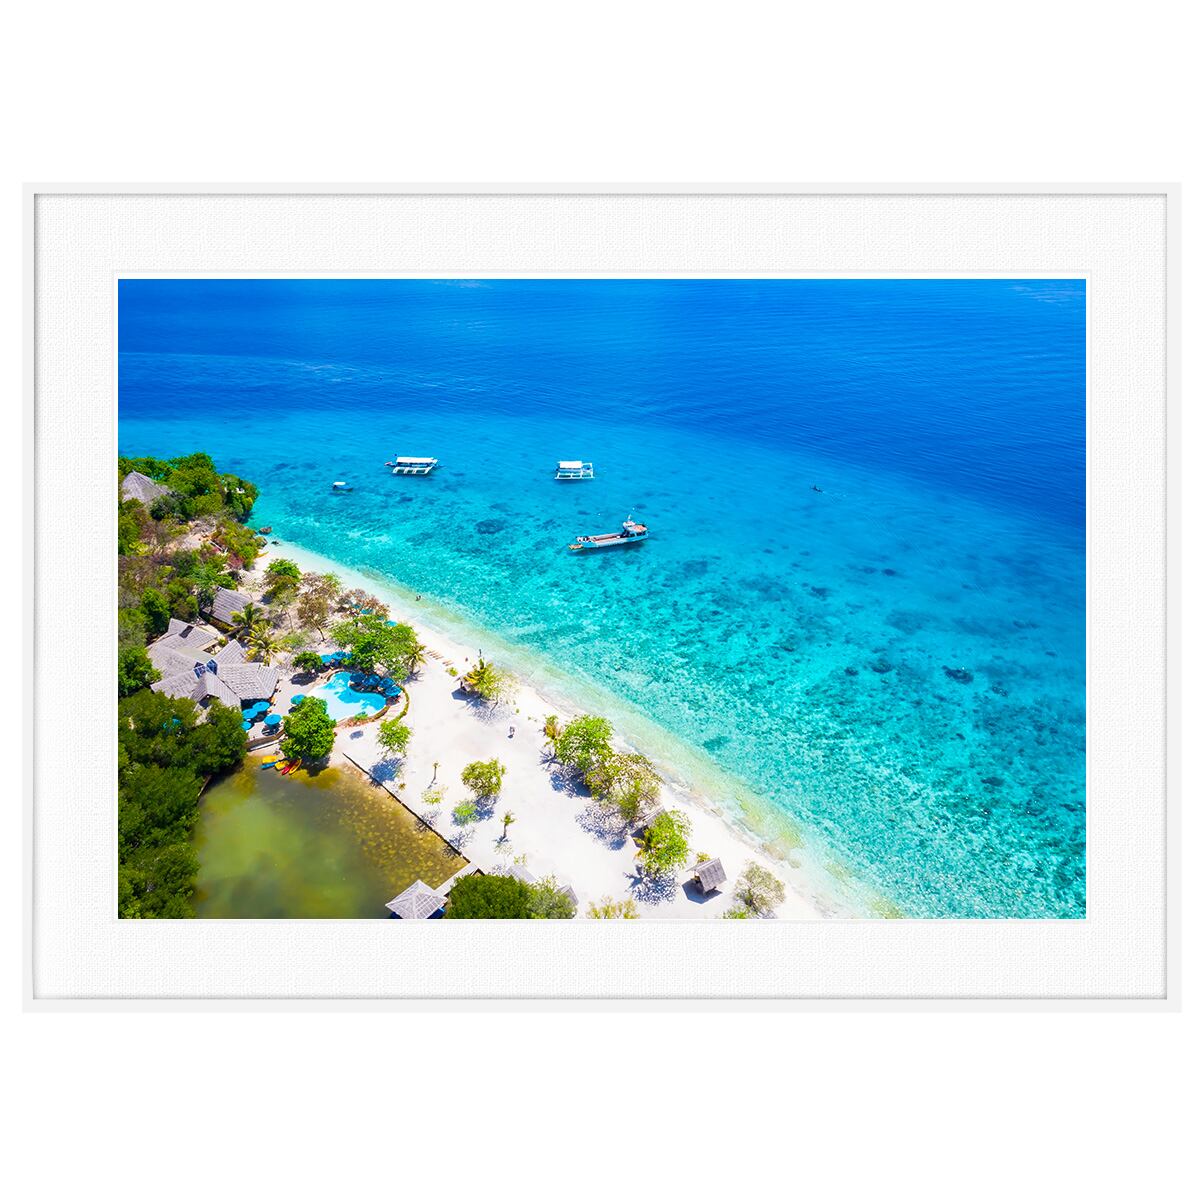 夏写真 フィリピン セブ島近海のスミロン島 インテリアアート写真額装 As0296 インテリアアート写真 通販のアートスクワッド